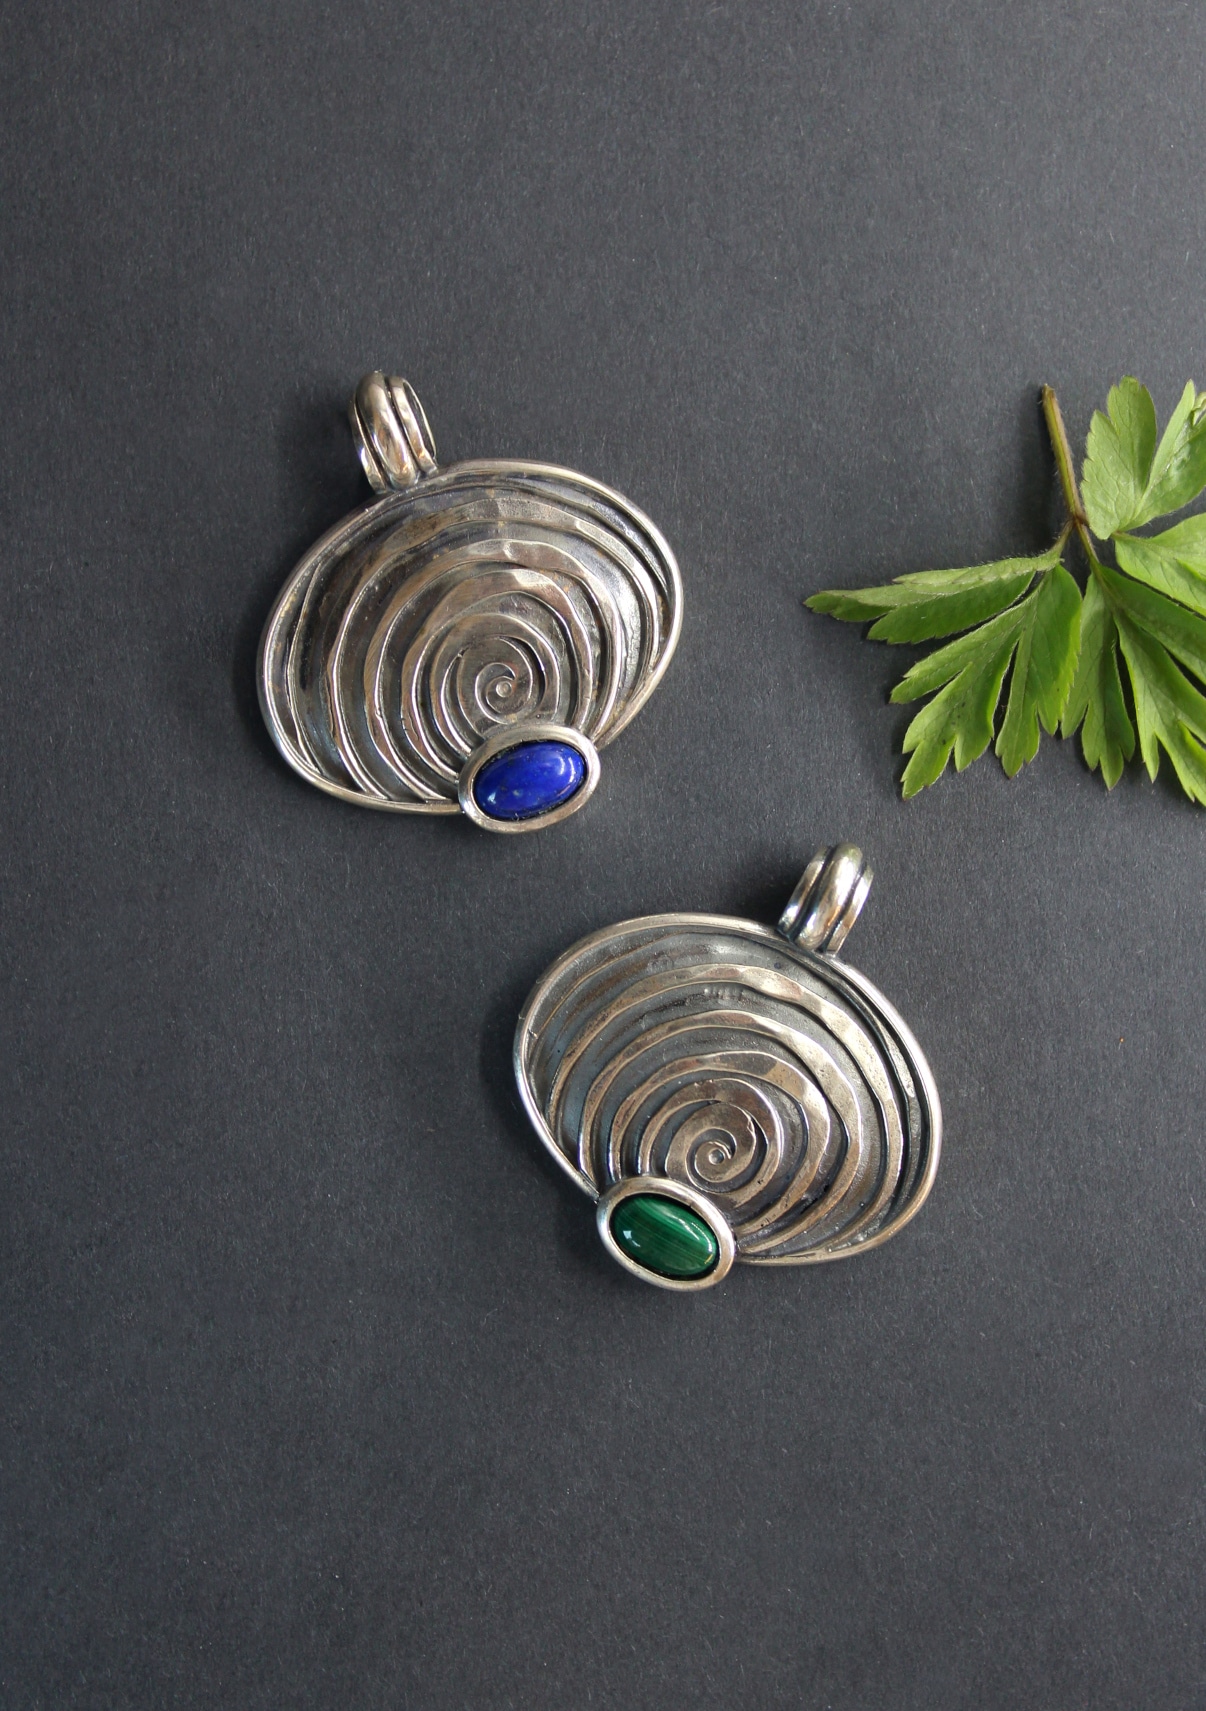 Schmuck Anhänger für Halskette in Silber in zwei unterschiedlichen Ausführungen: Lapis (Blau) und Malachit (grün)